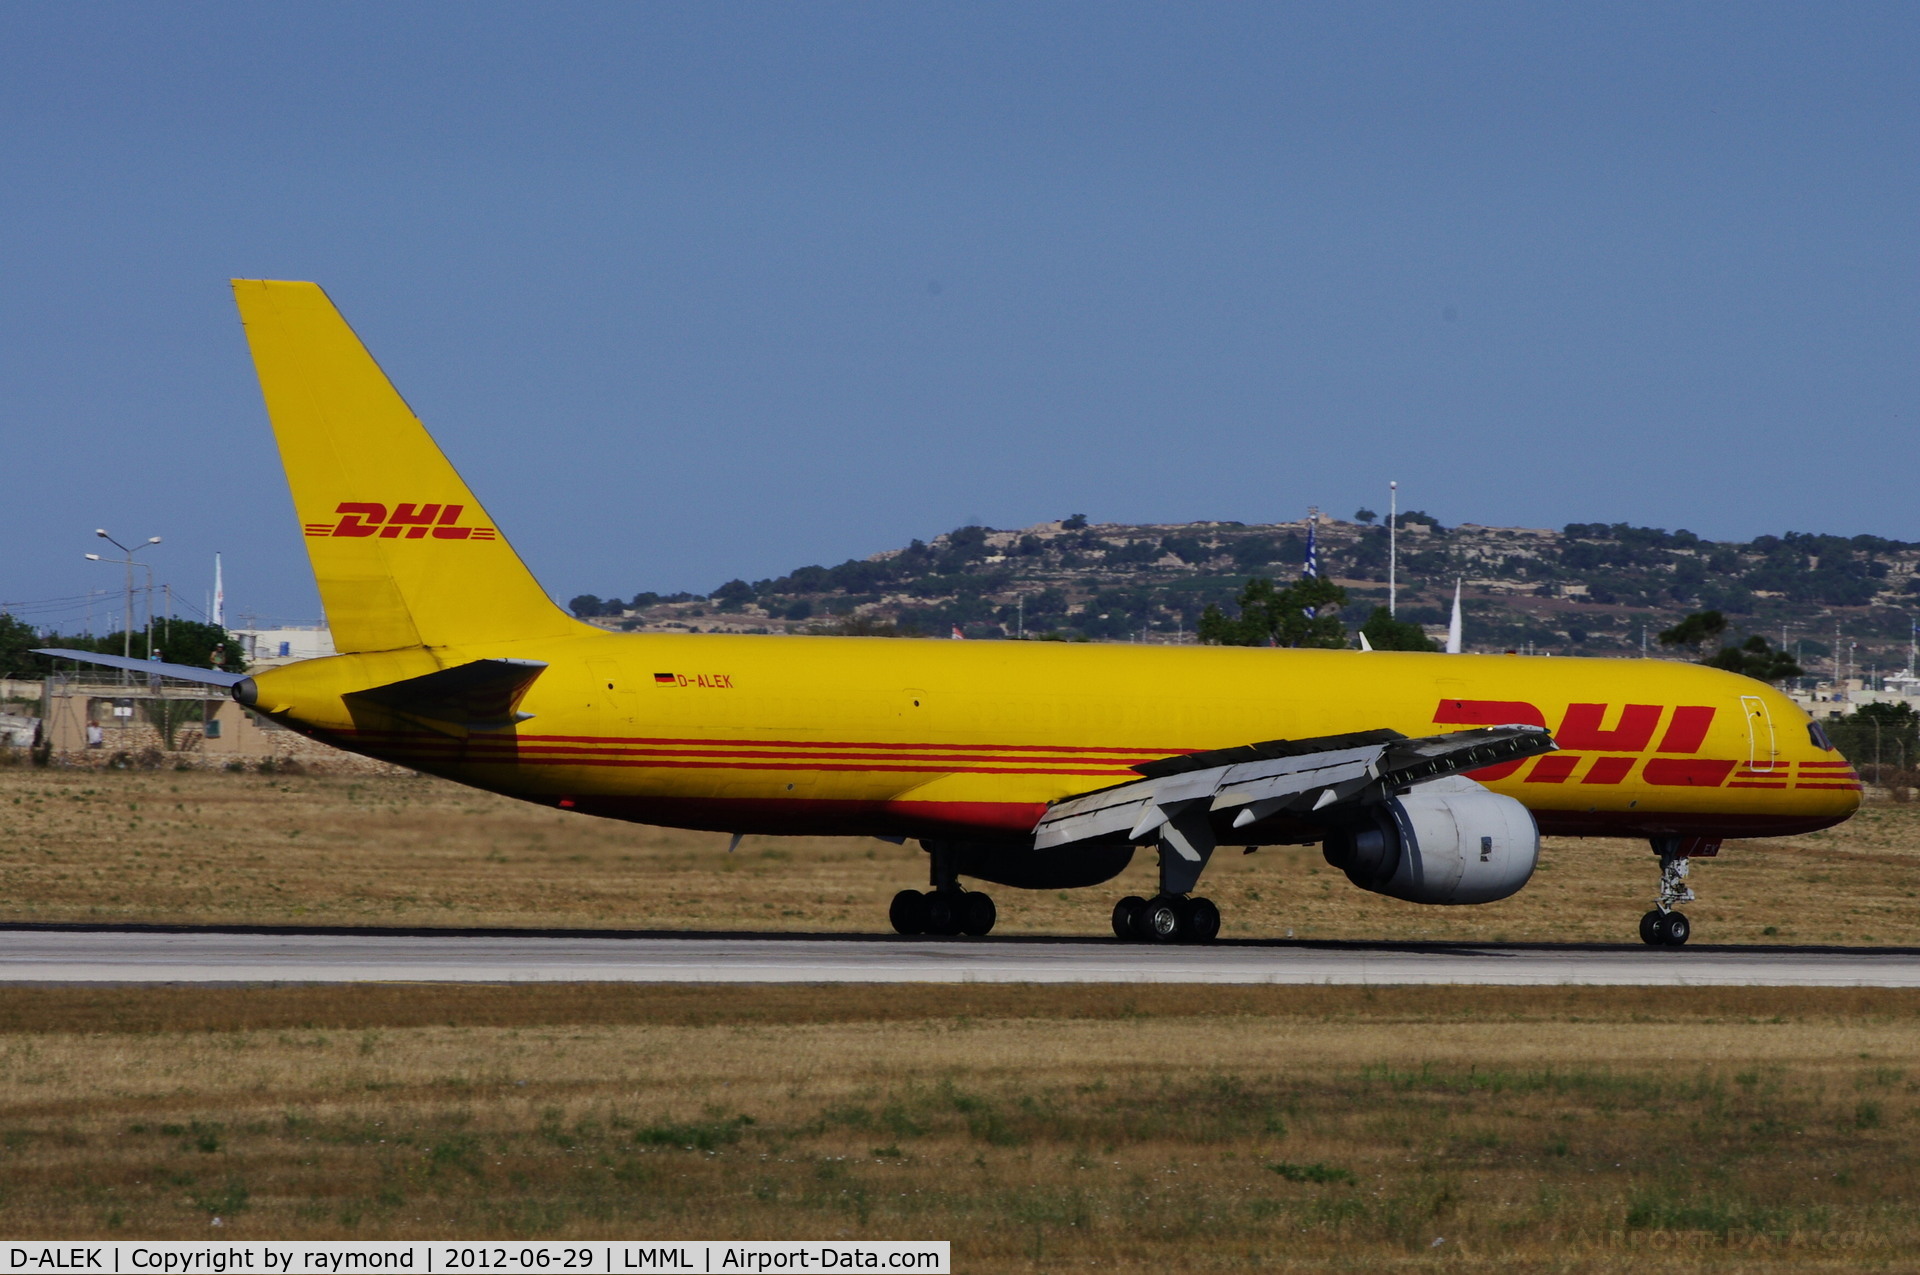 D-ALEK, 1986 Boeing 757-236/SF C/N 23533, B757 D-ALEK of DHL landing in Malta.